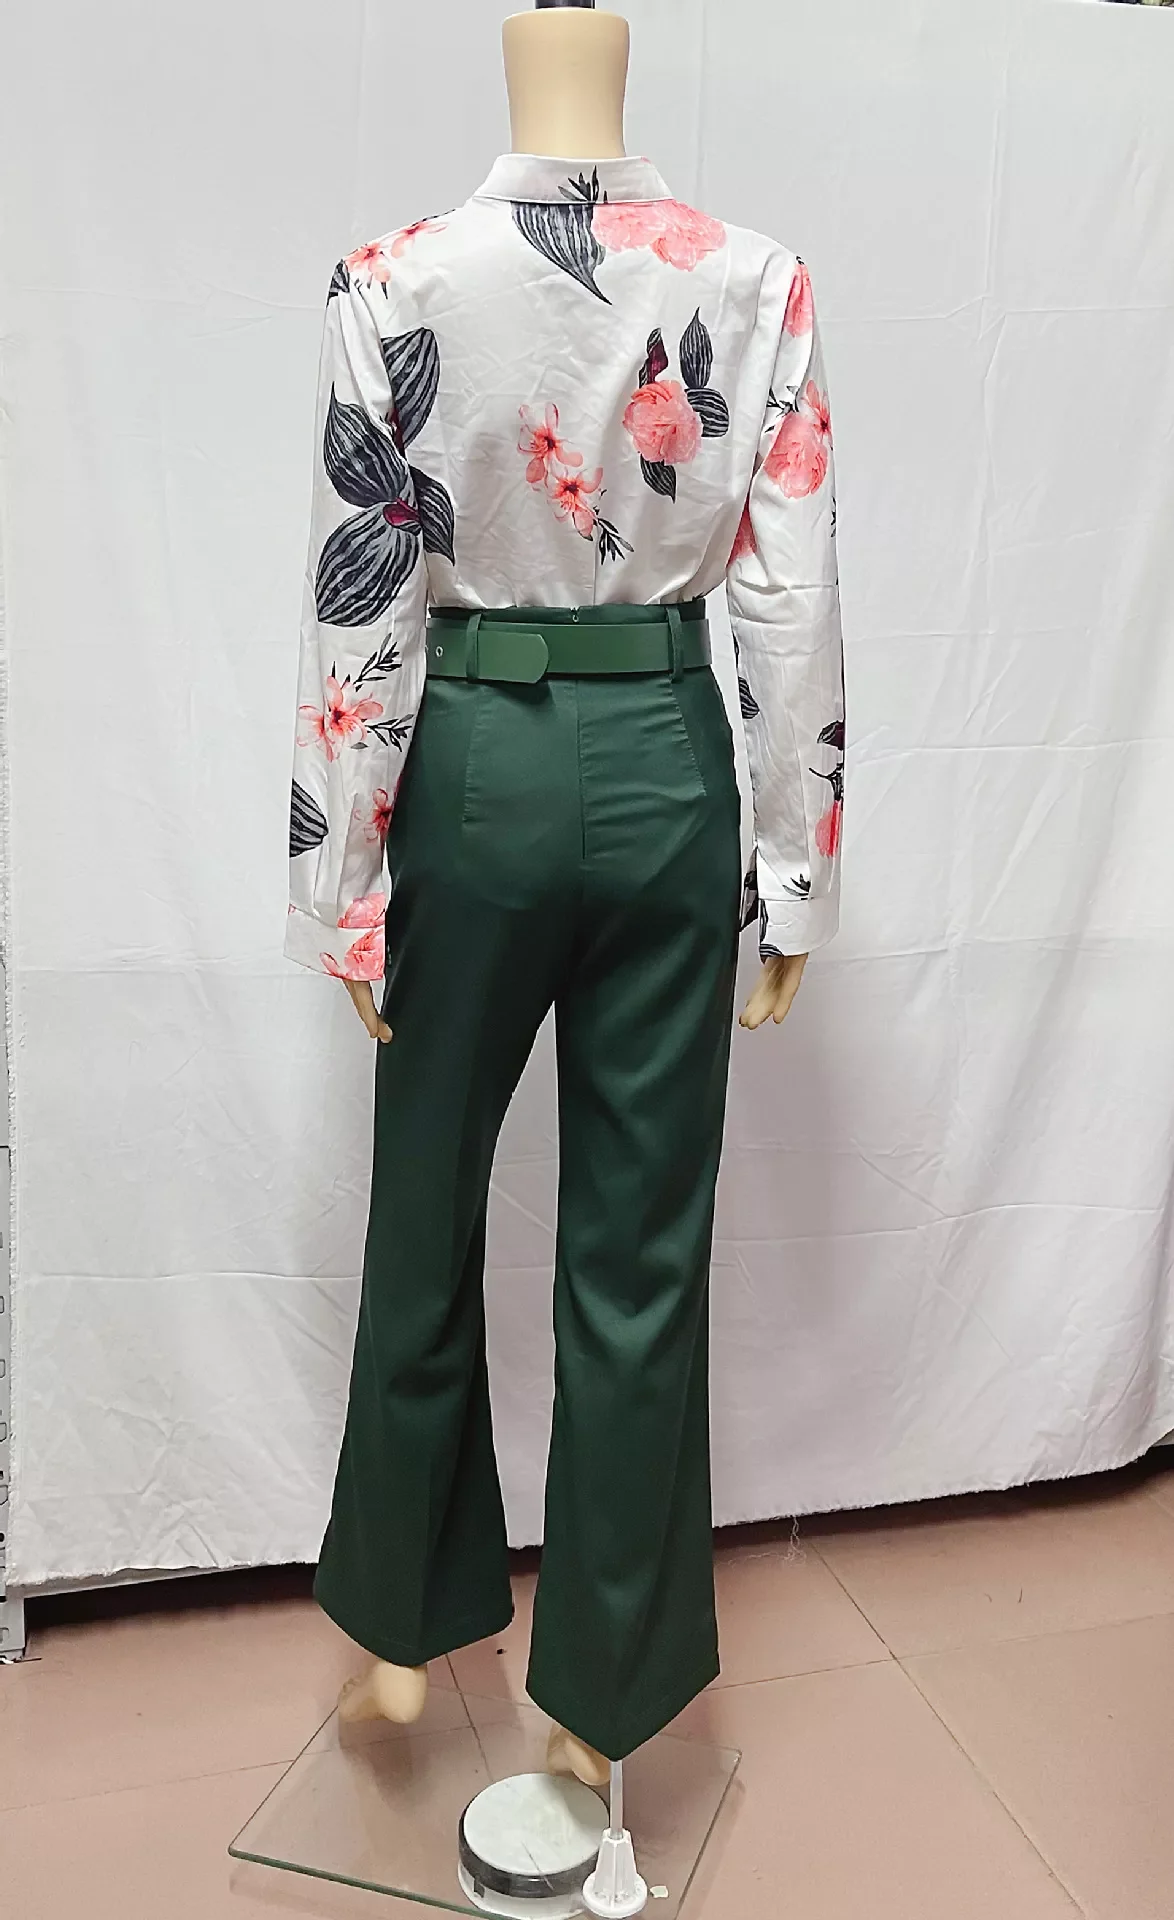 C7028 Latest Design Elegant Classic Two Piece Pants Set Women Long ...